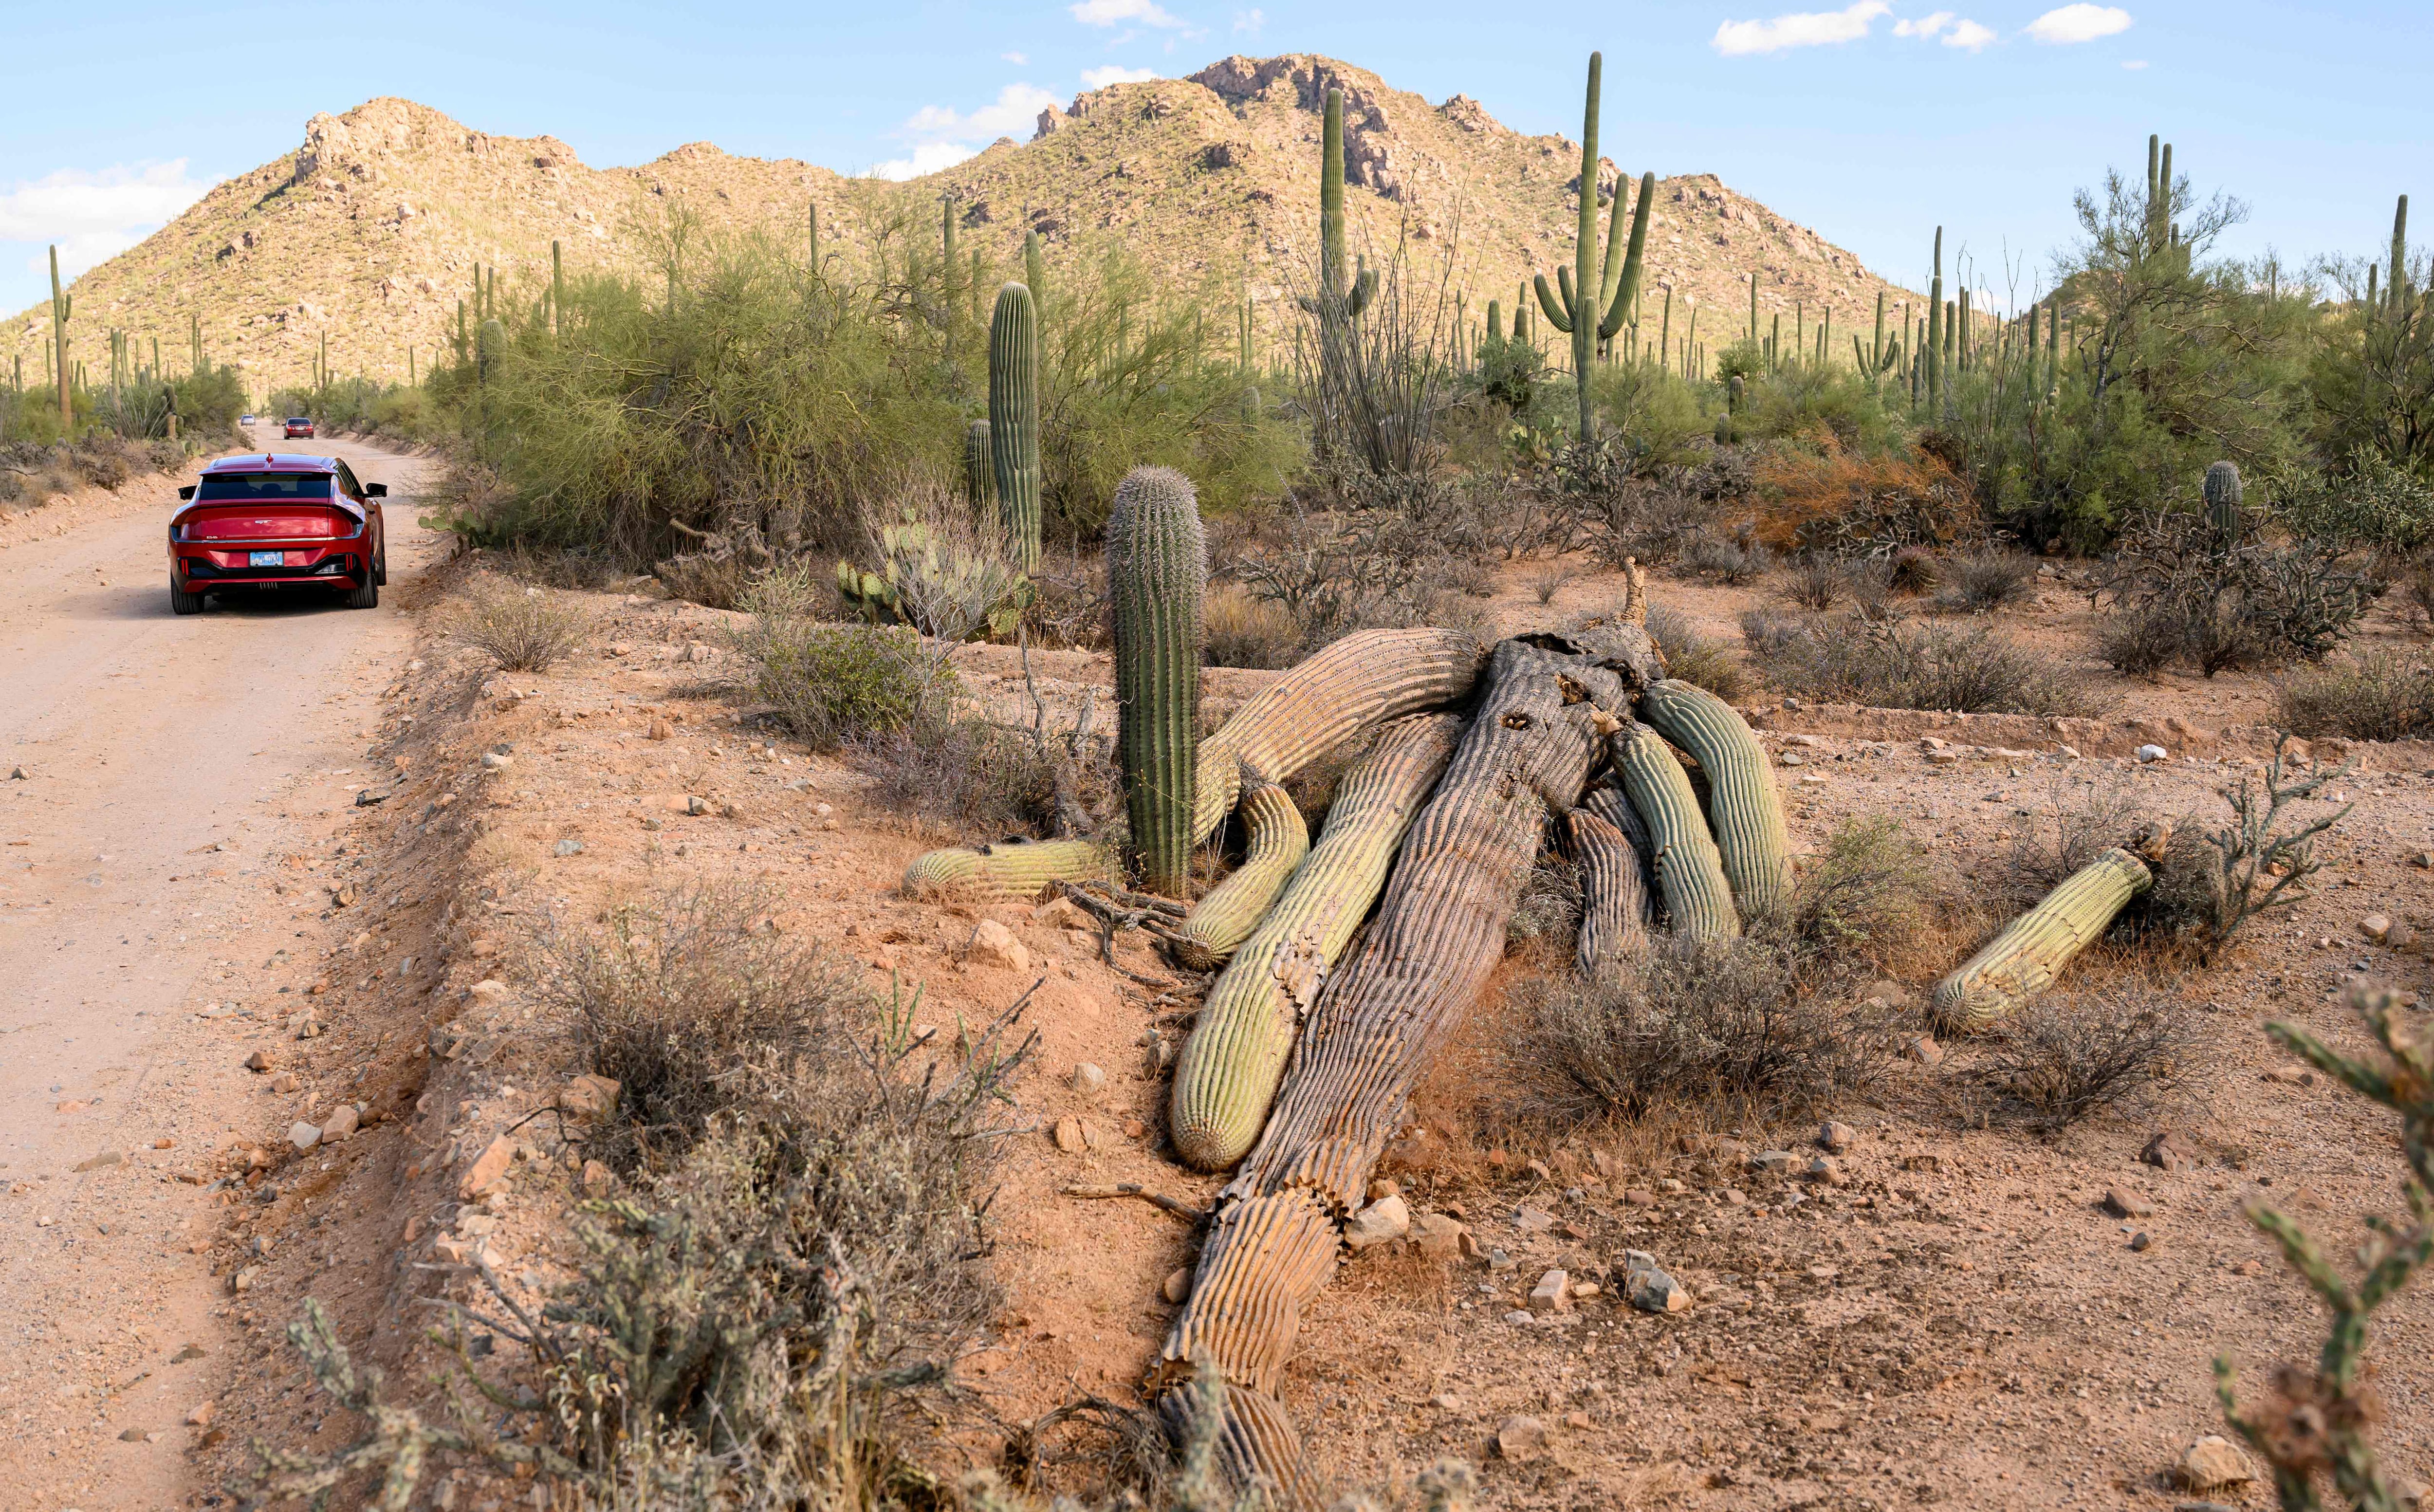 Un cactus Saguaro caído se descompone en el Parque Nacional Saguaro cerca de Tucson, Arizona, el 19 de noviembre de 2023. La mayoría de los parques nacionales se establecieron en áreas que son tierras ancestrales indígenas. A partir del siglo XIX, los nativos americanos fueron expulsados ​​de ellos o obligados a cederlos mediante tratados con condiciones desiguales. (Foto de JOSH EDELSON / AFP)